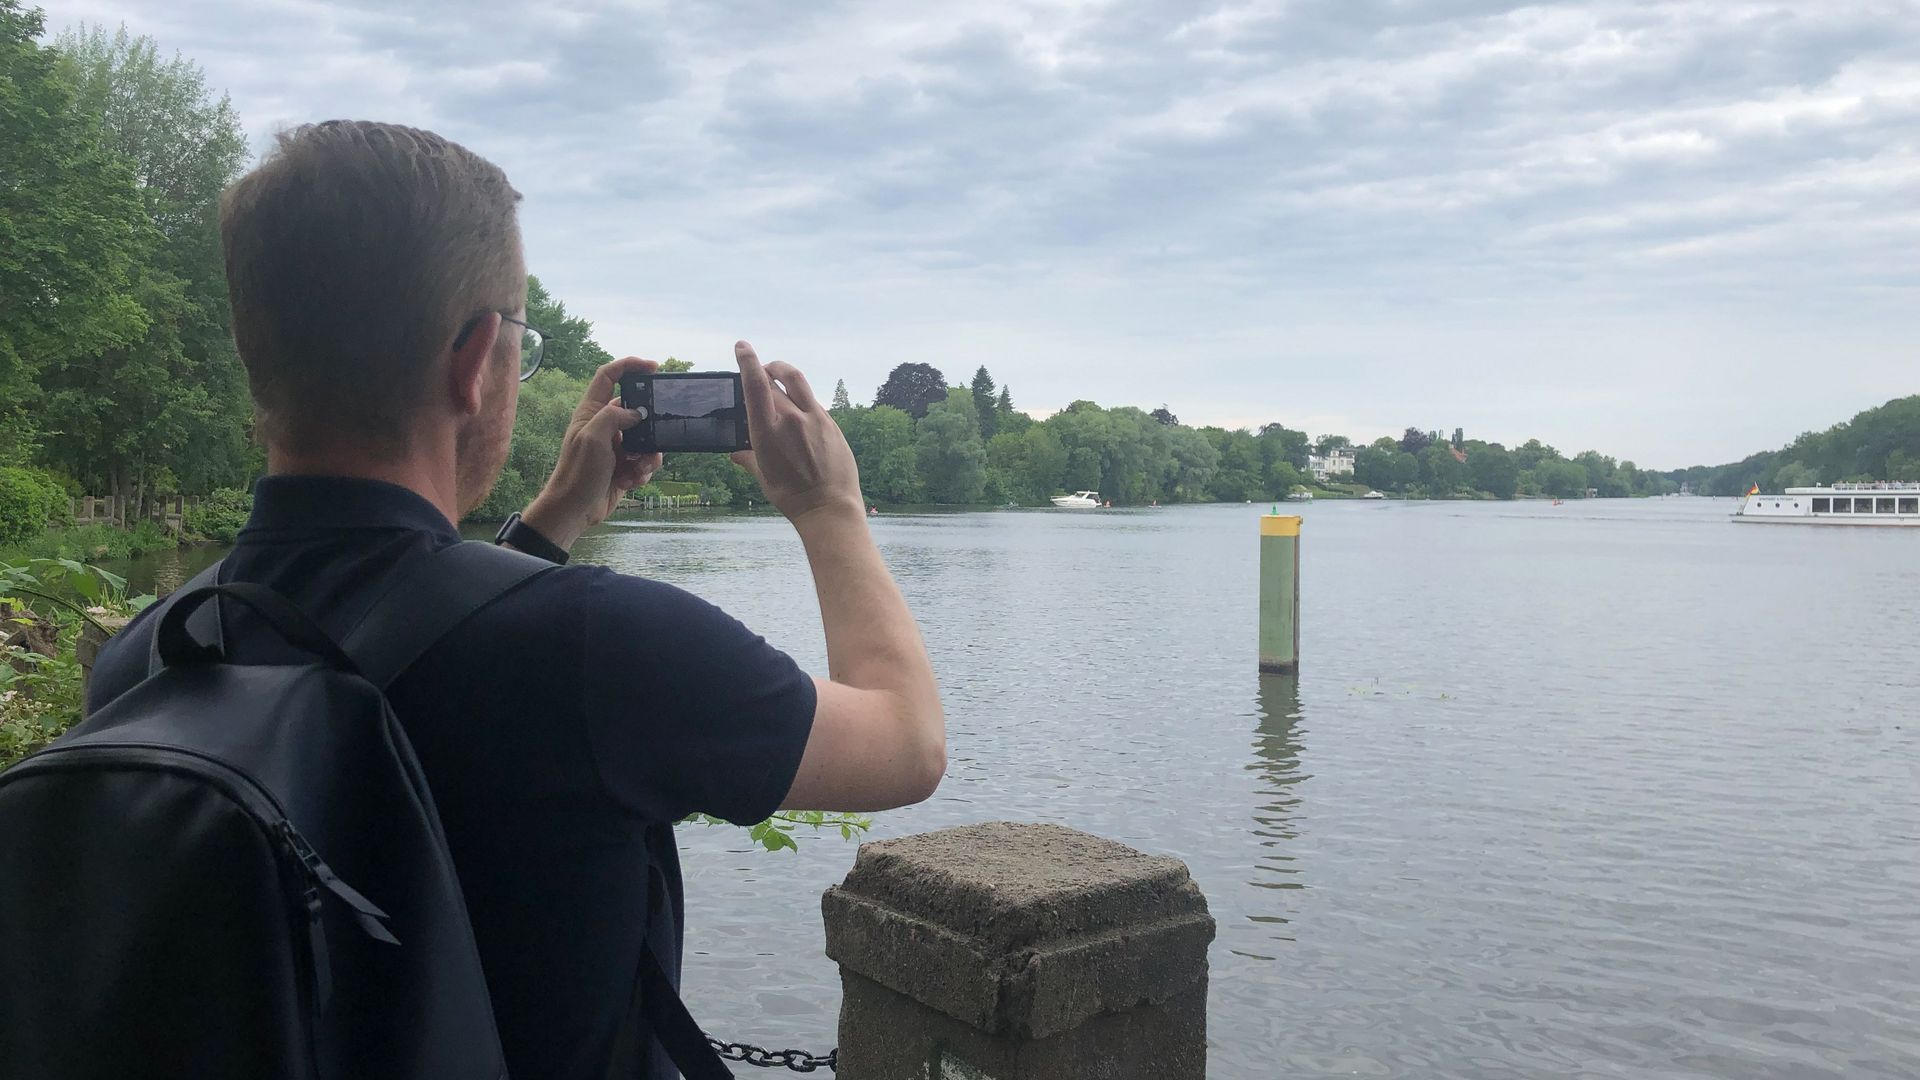 Foto: Person fotografiert eine Landschaft mit einem See.